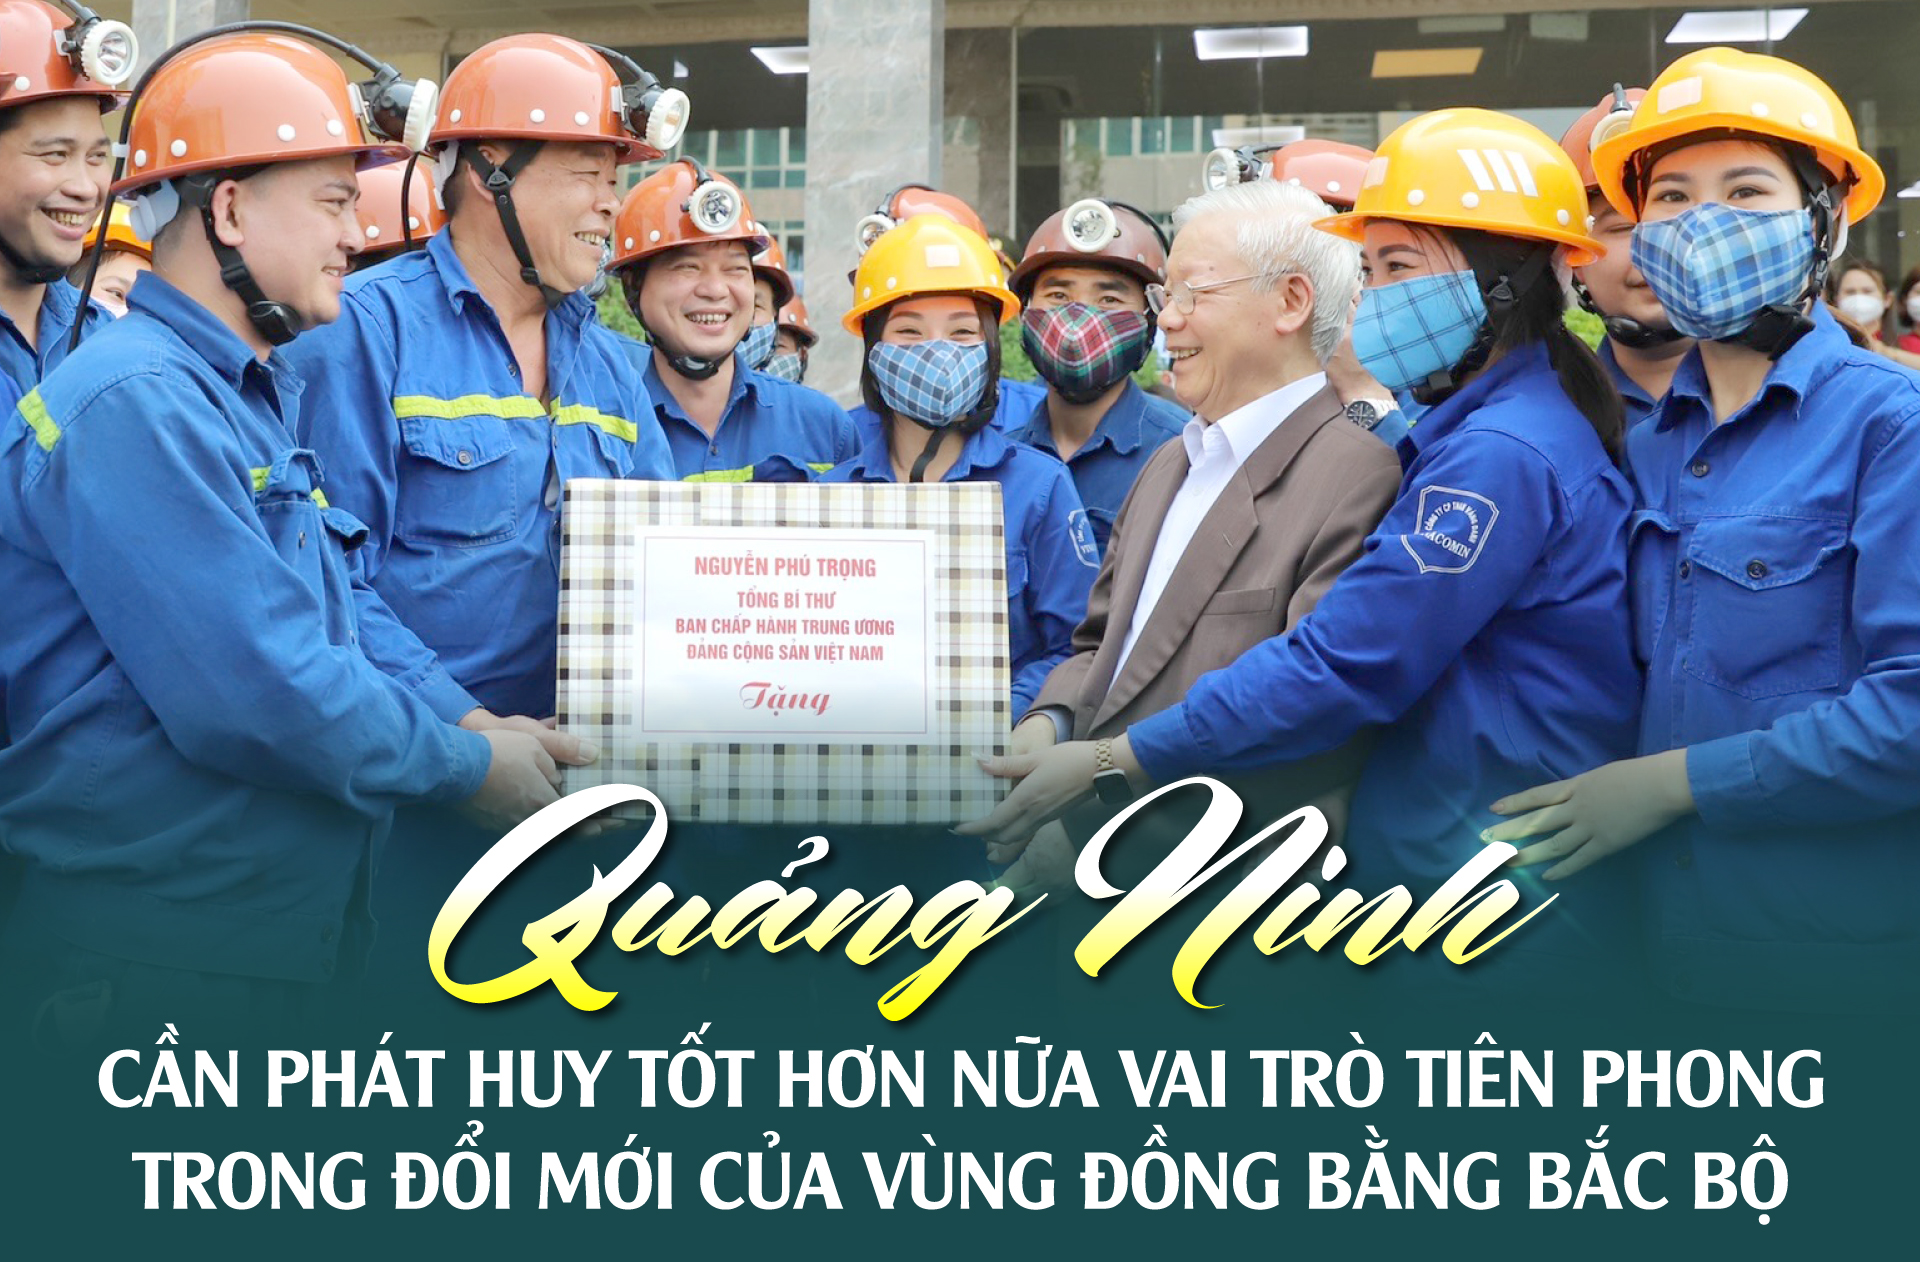 Quảng Ninh cần phát huy tốt hơn nữa vai trò tiên phong trong đổi mới của vùng Đồng bằng Bắc Bộ ()